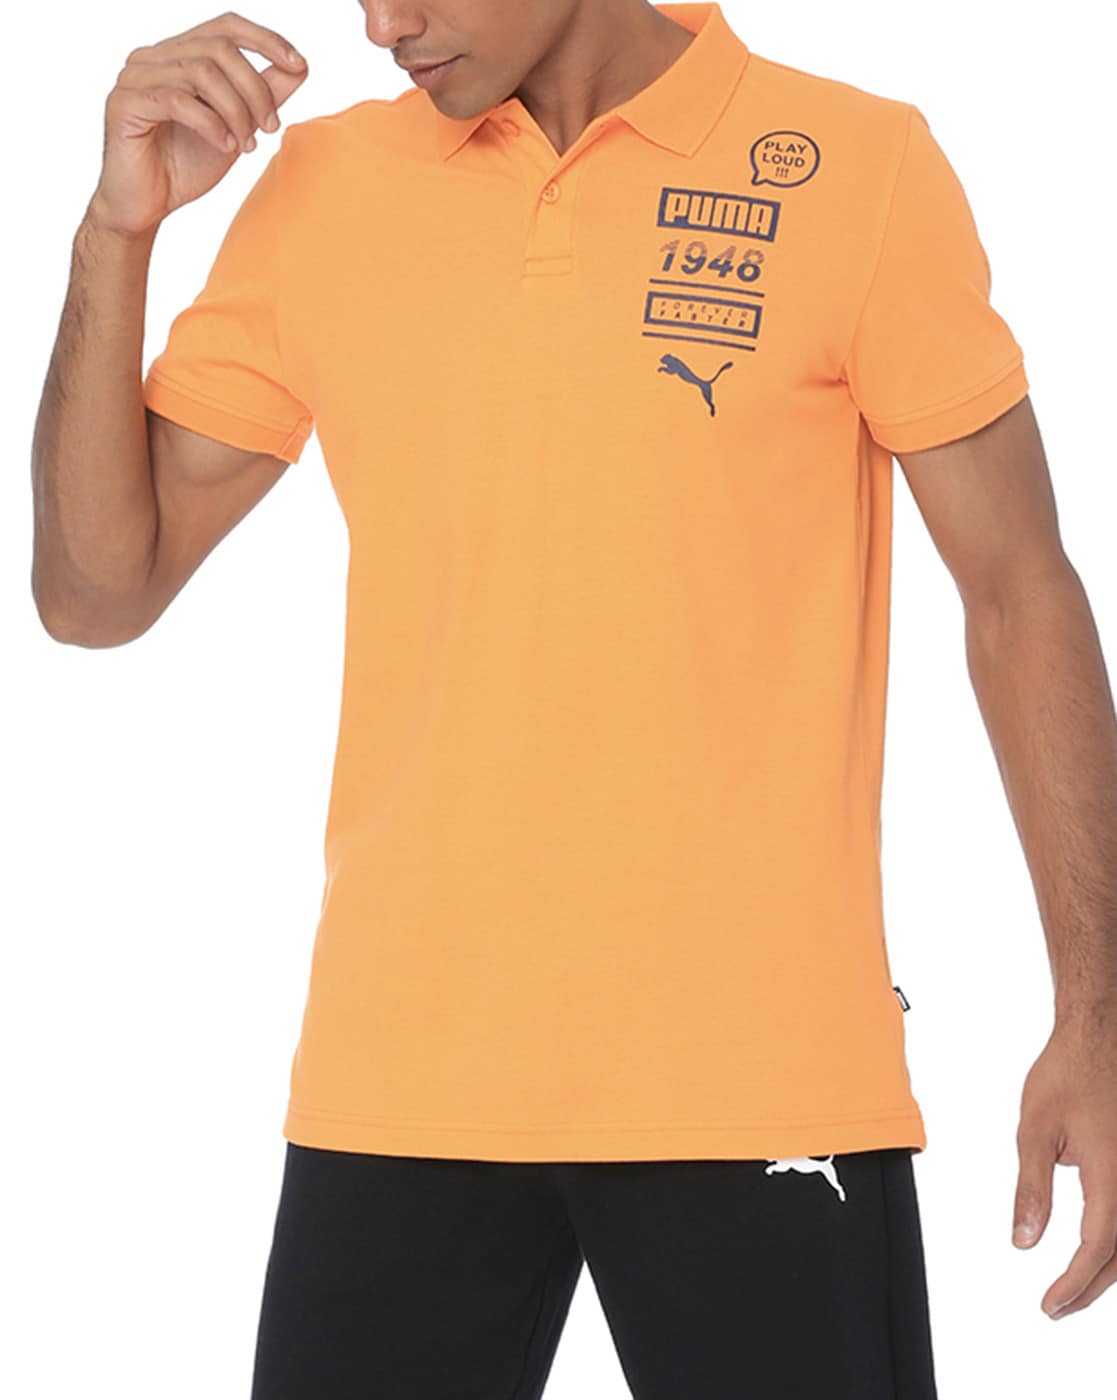 orange puma shirt